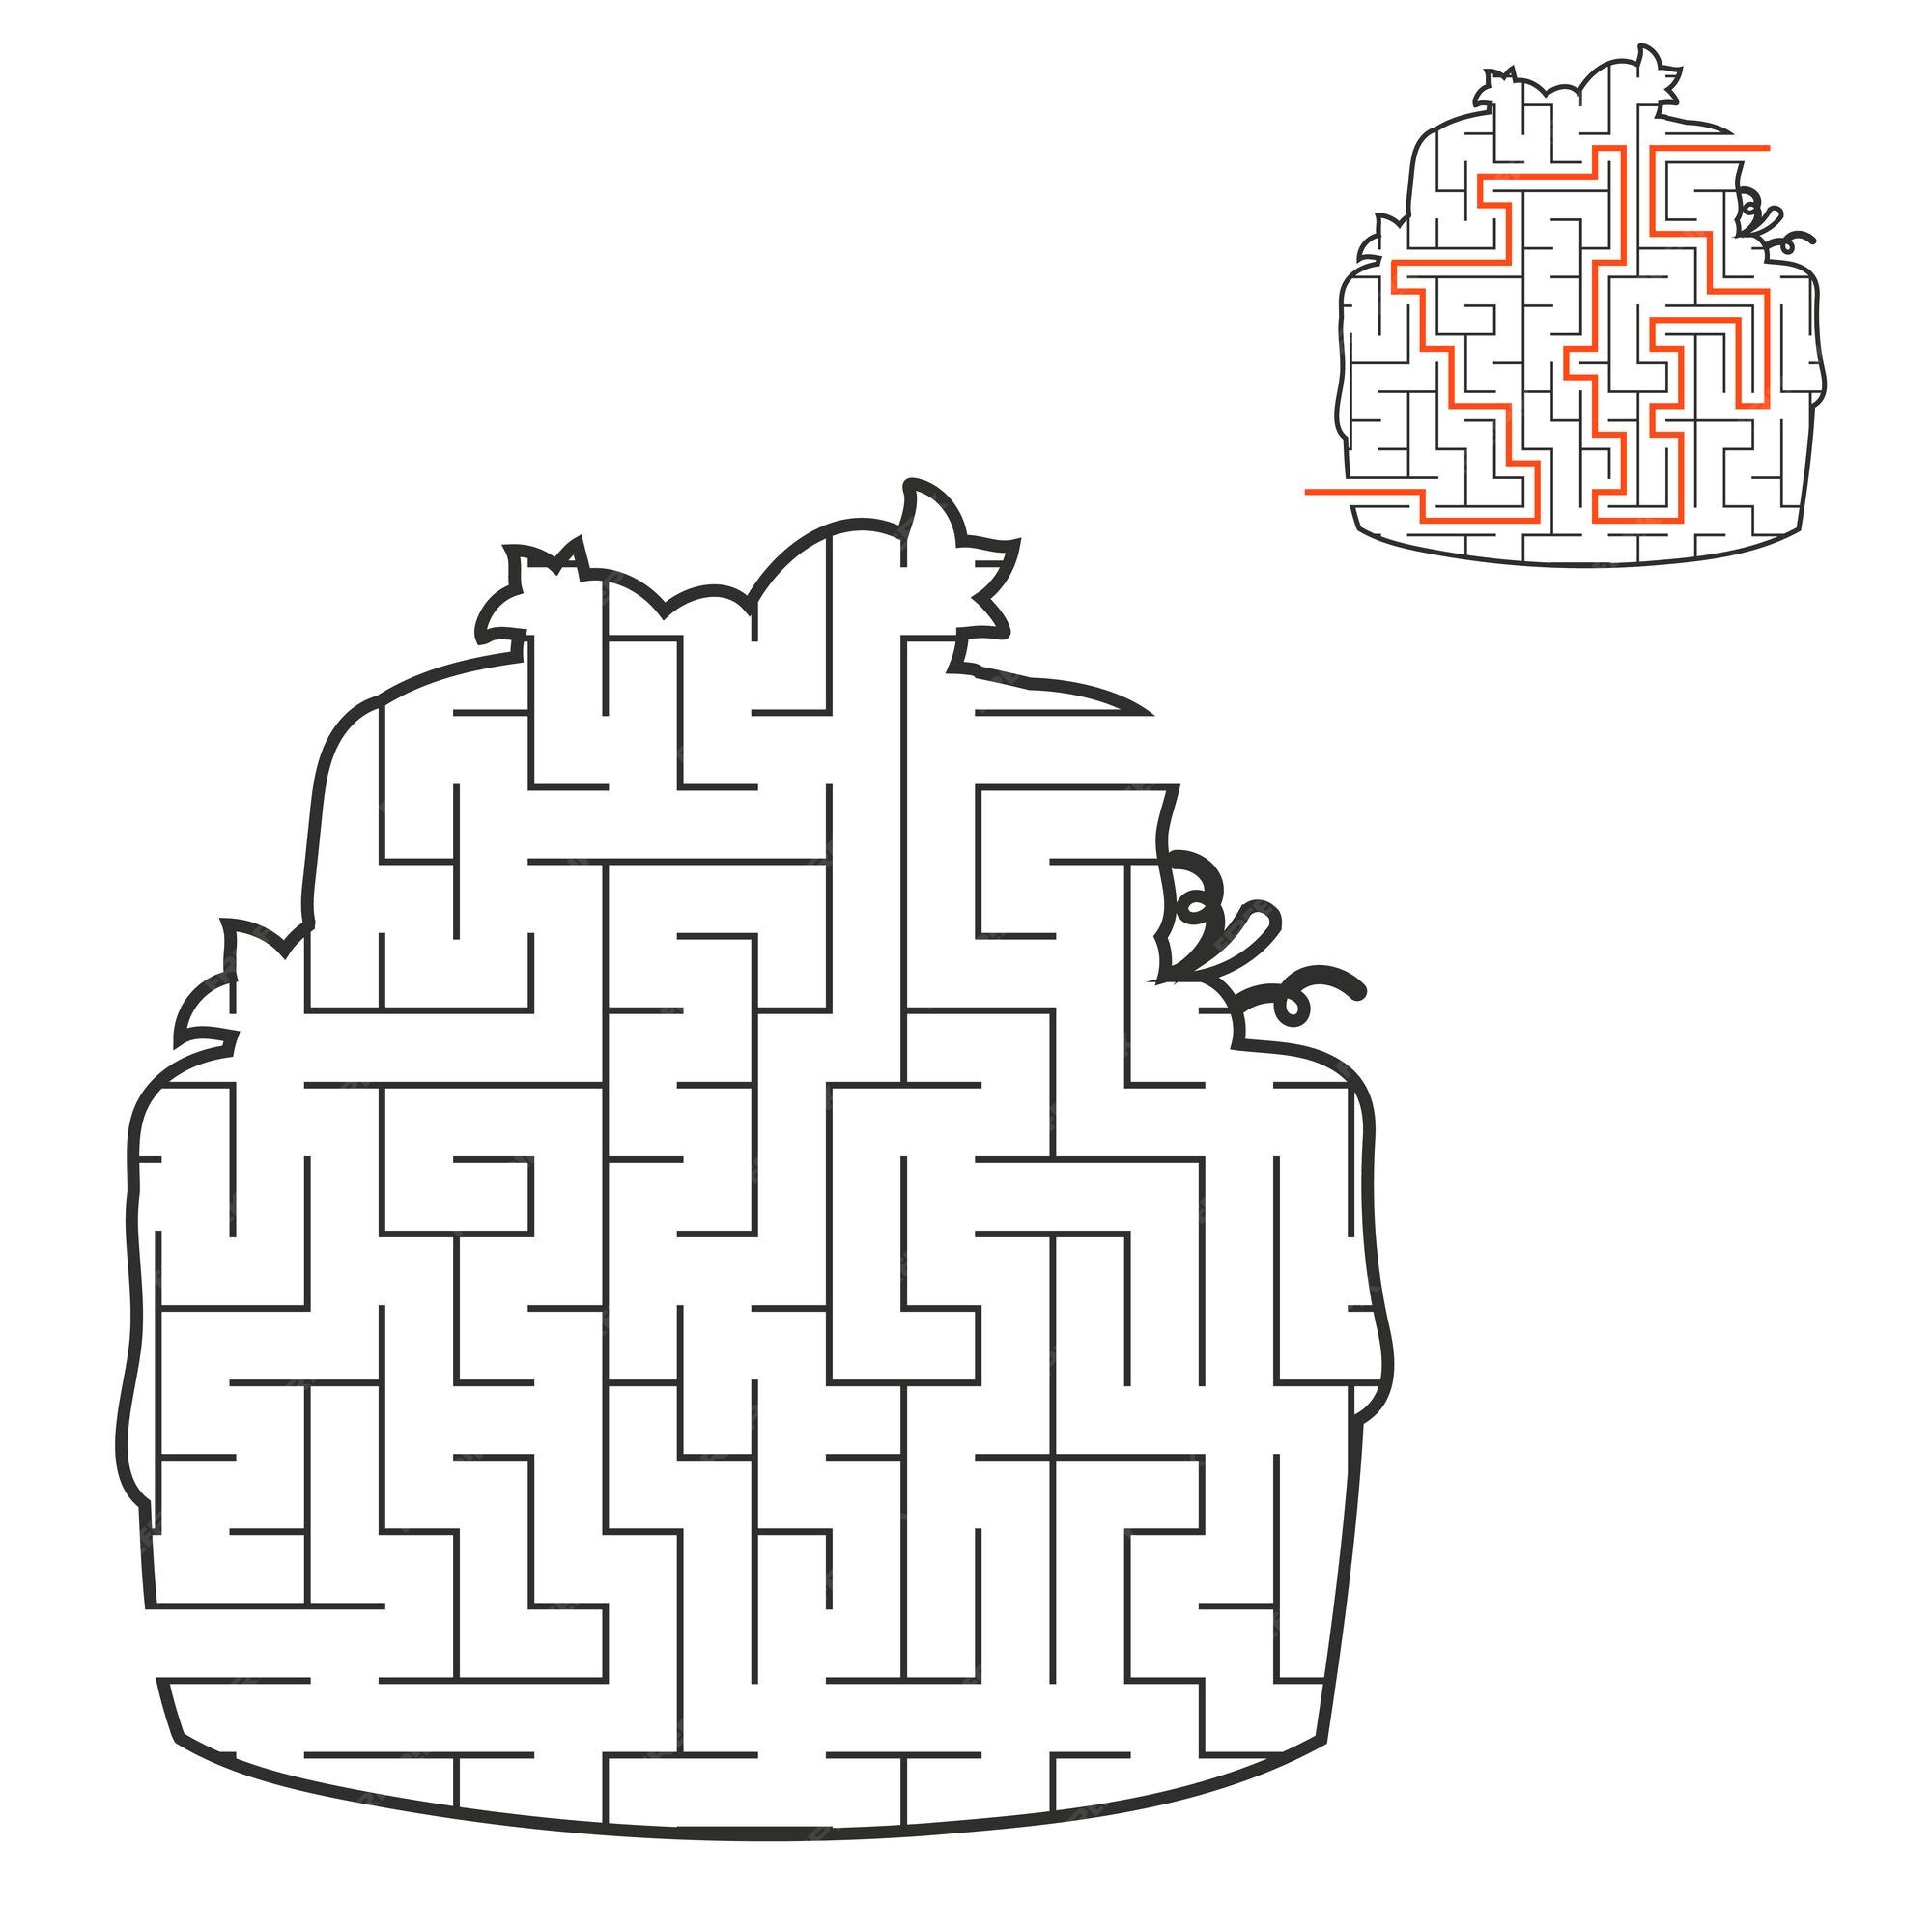 Jogo abstrato de labirinto simples com resposta labirinto fácil para  crianças